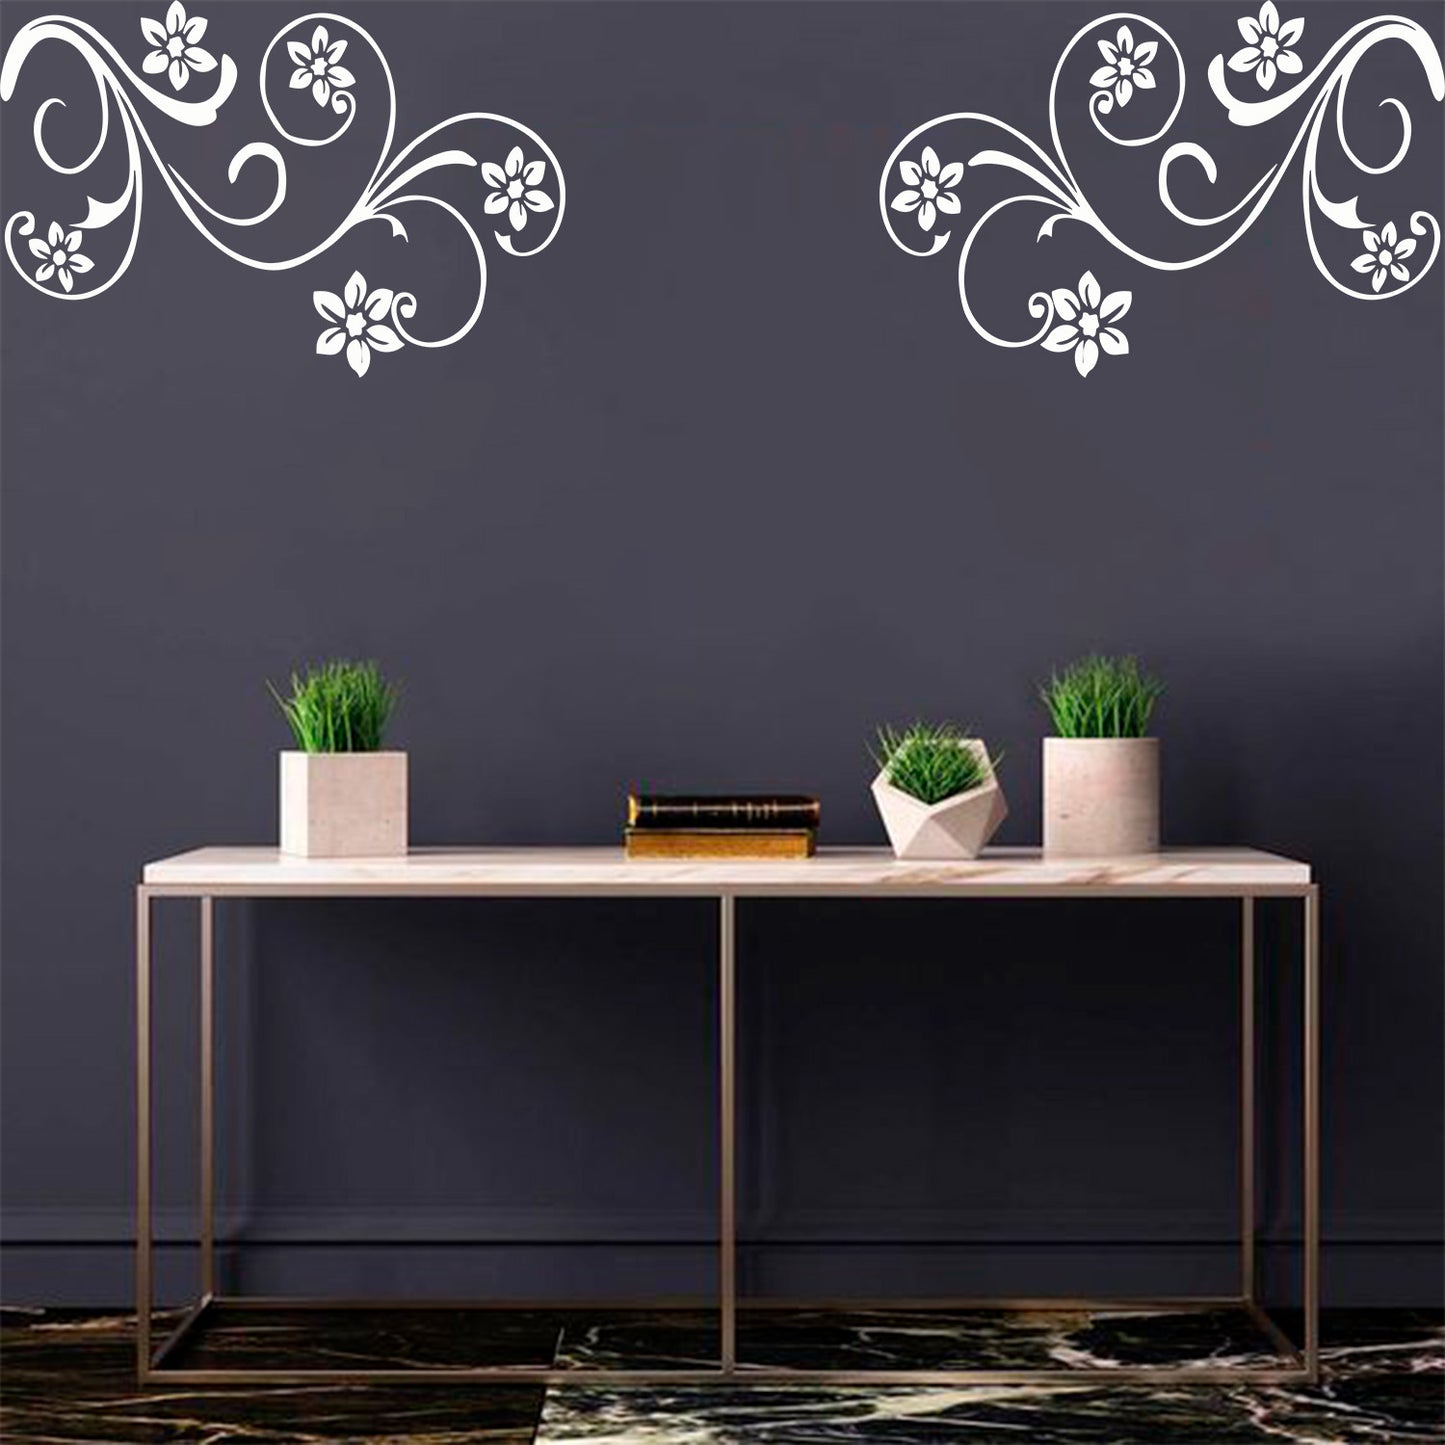 Swirl Flower Wall Design Stencil (KHS375)